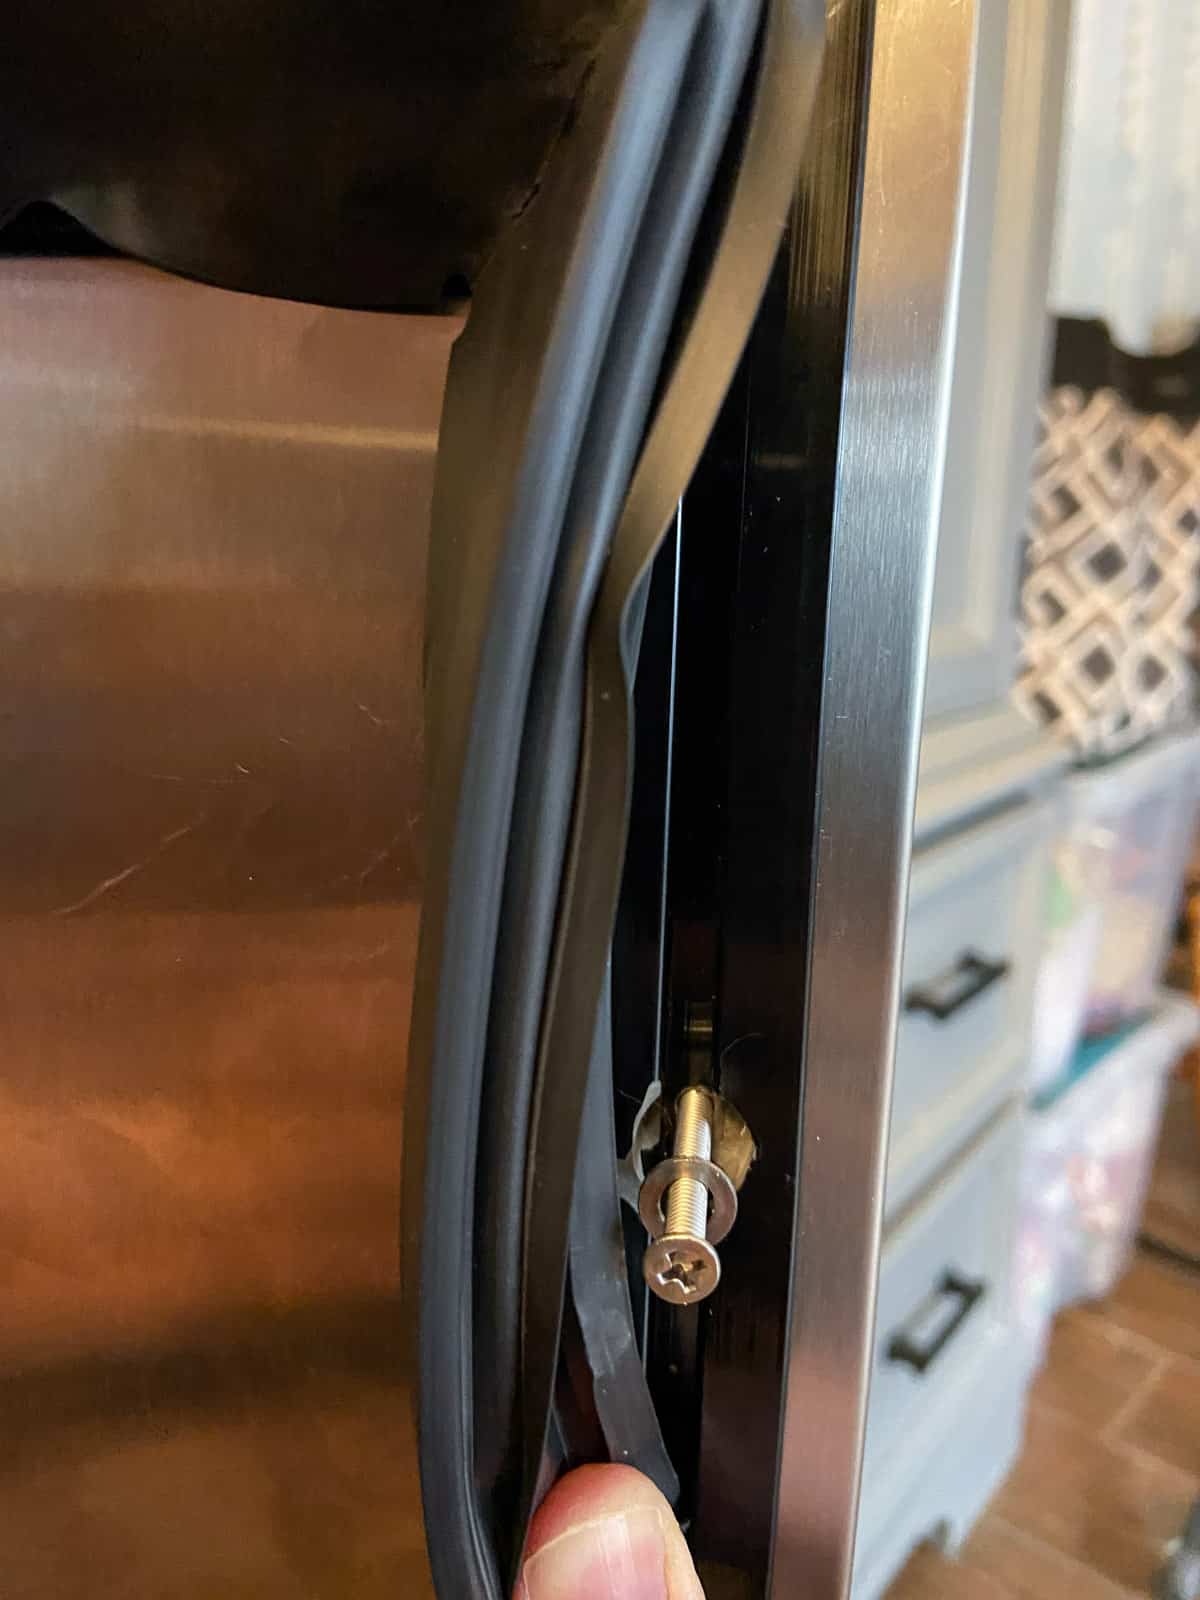 screwing in the door handle